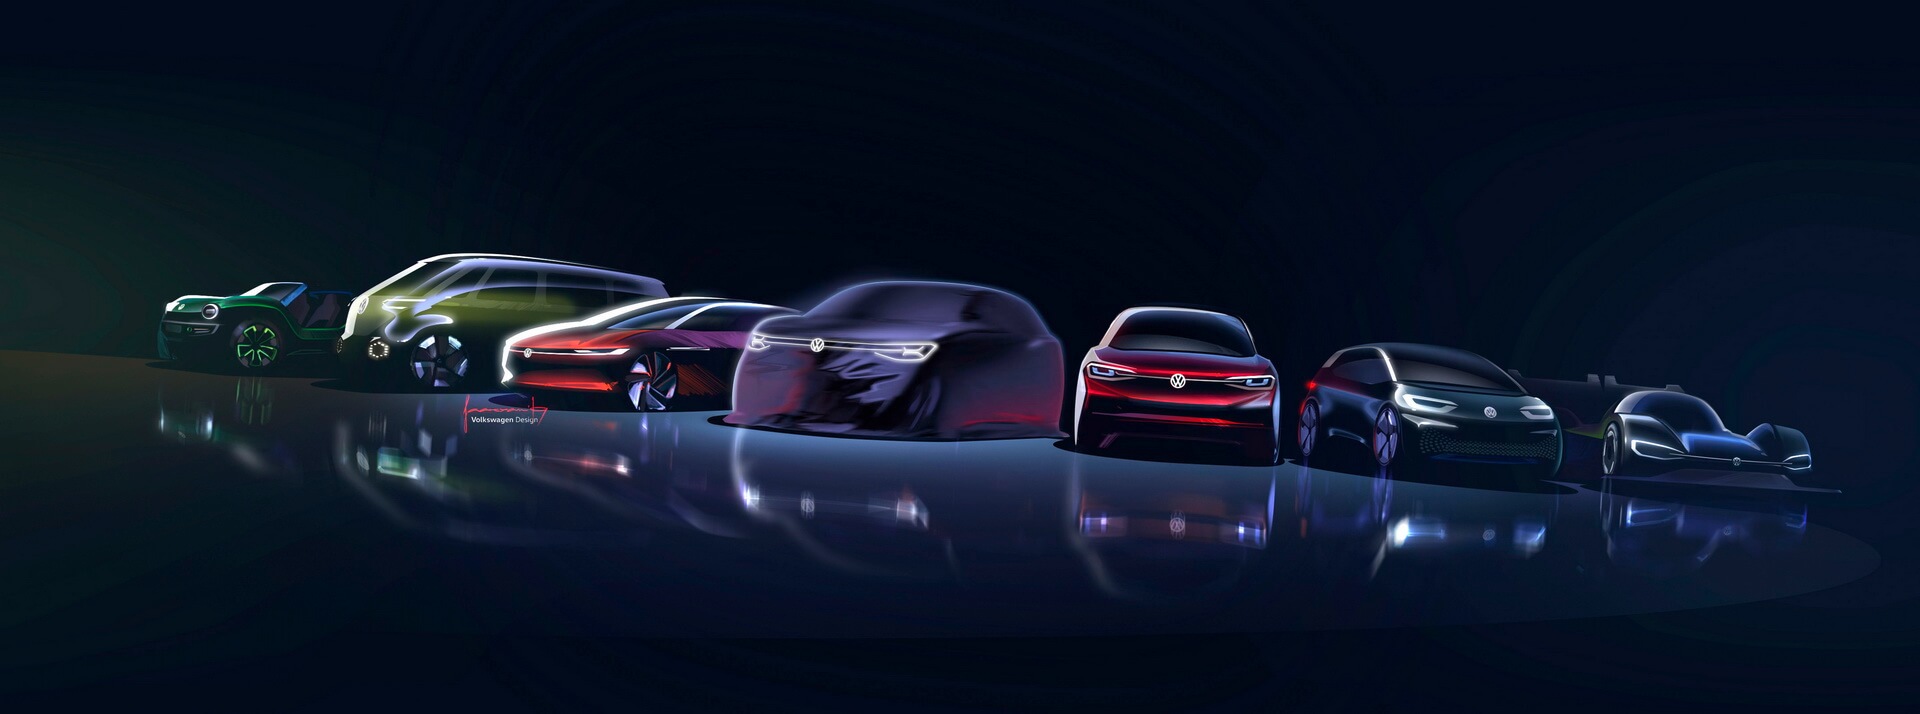 Новое семейство электромобилей Volkswagen